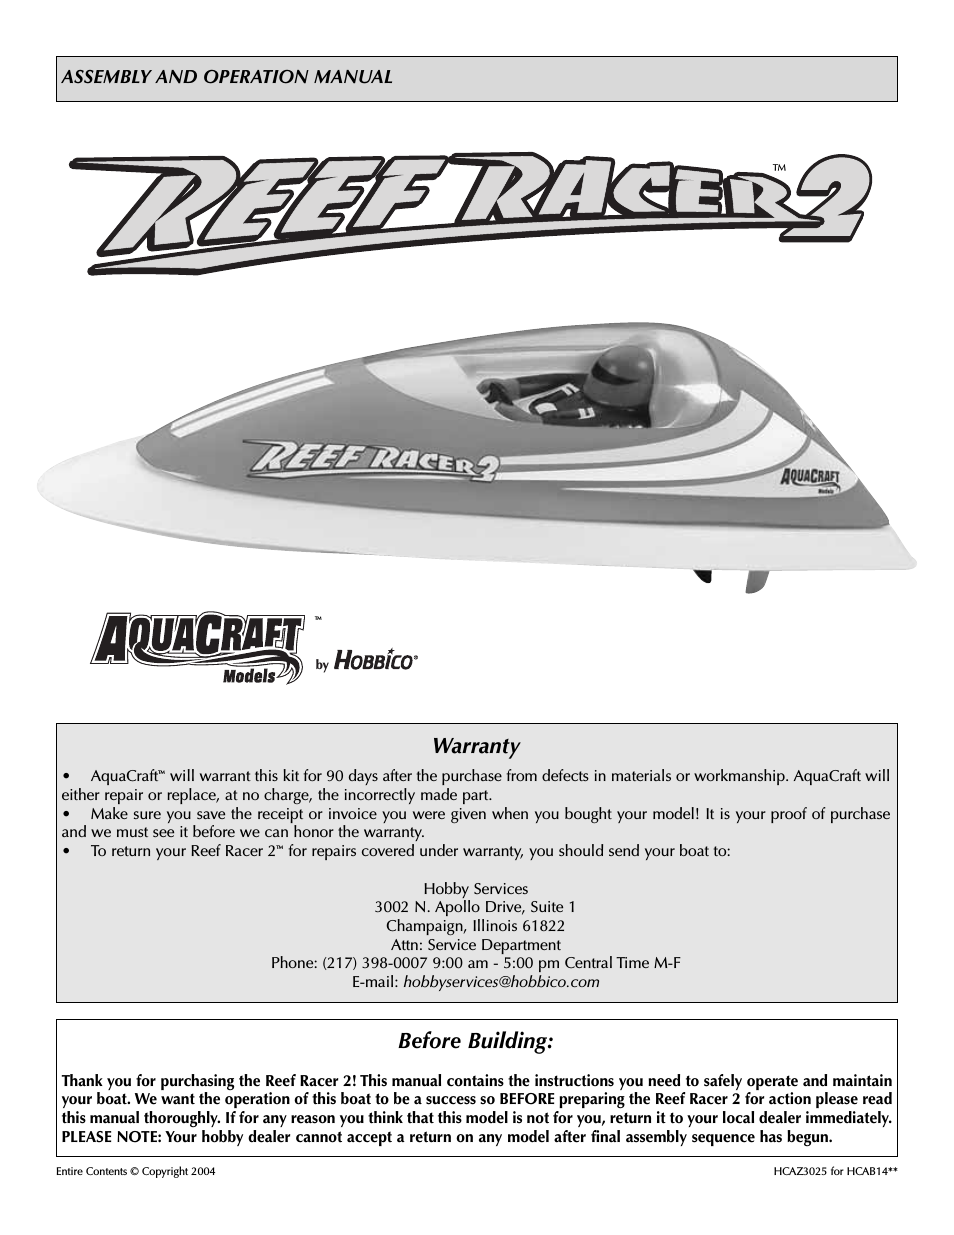 Reef Racer 2